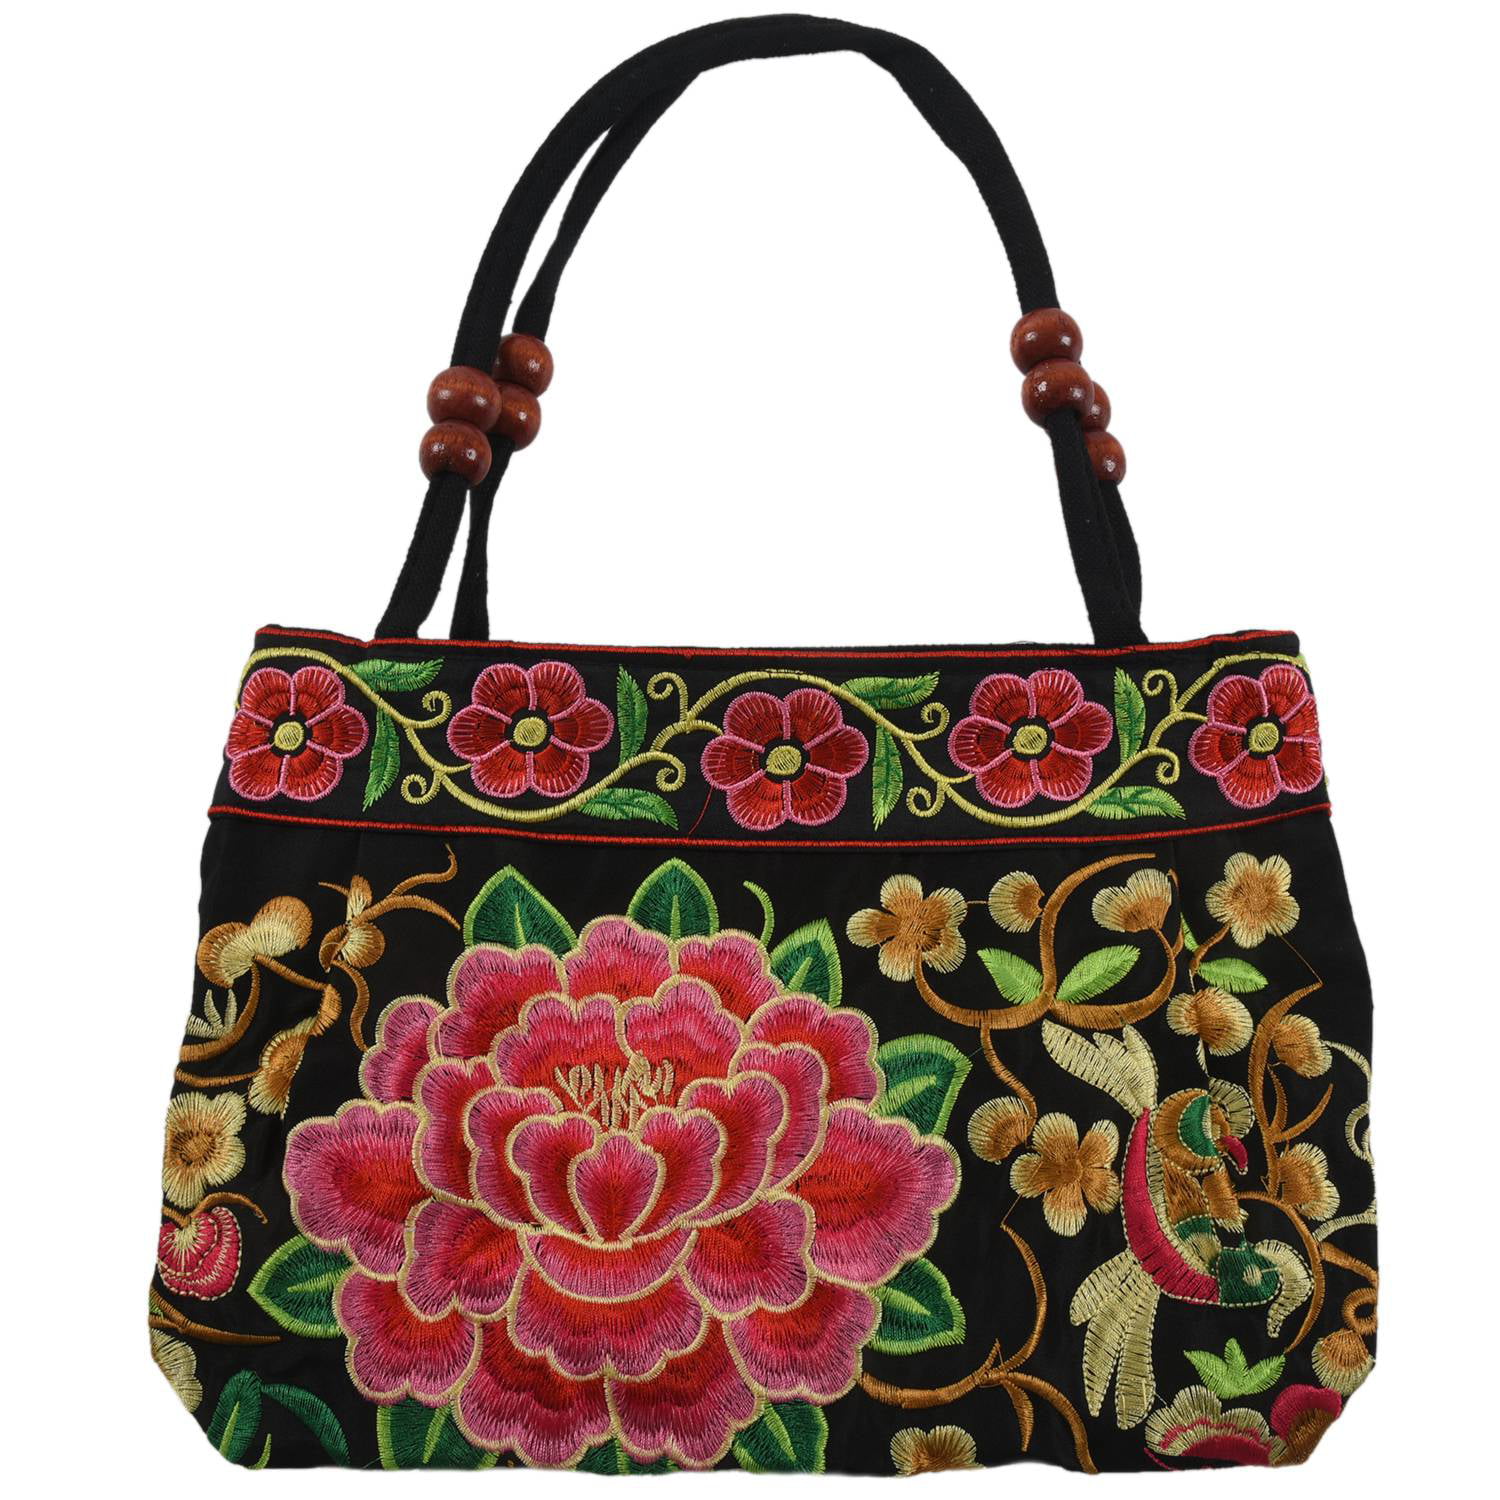 Women Handbag Embroidery Ethnic Handmade Flowers Ladies Tote Shoulder Bags 